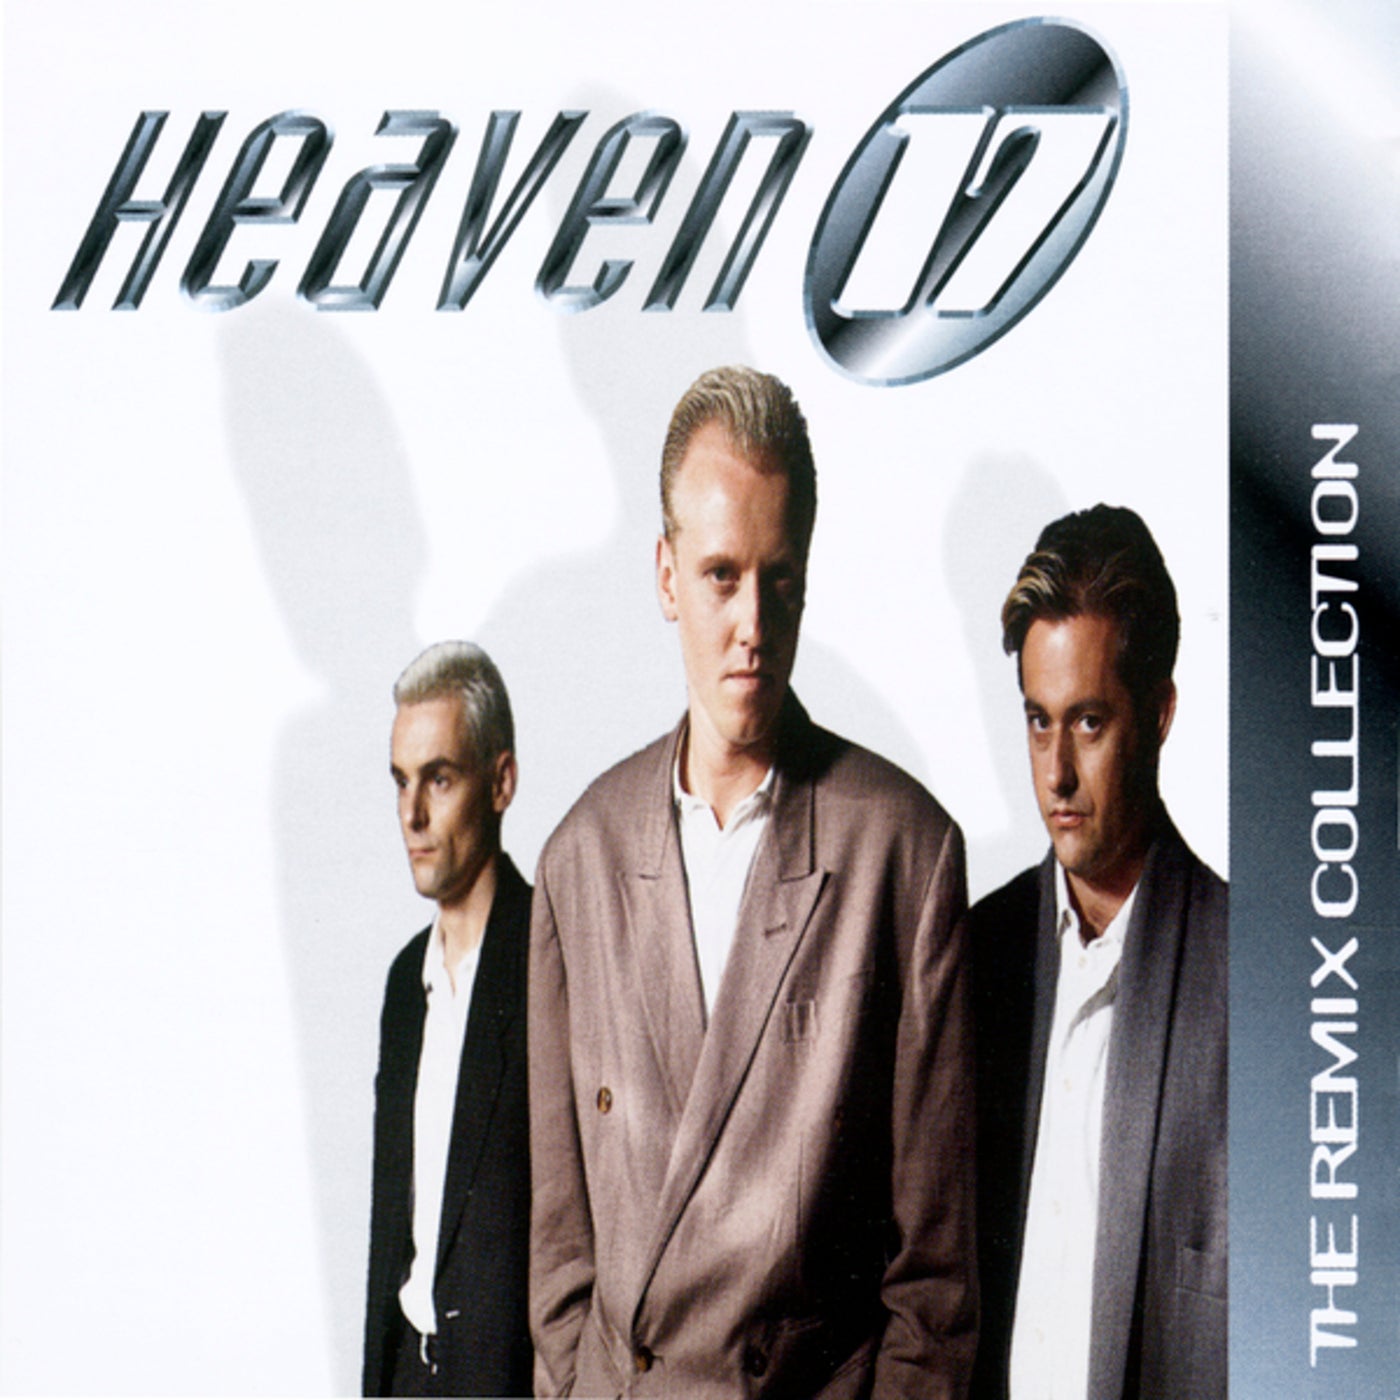 Feeling certain. Heaven исполнитель. Heaven 17. Heaven 17 - Let me go. Rapino brothers.